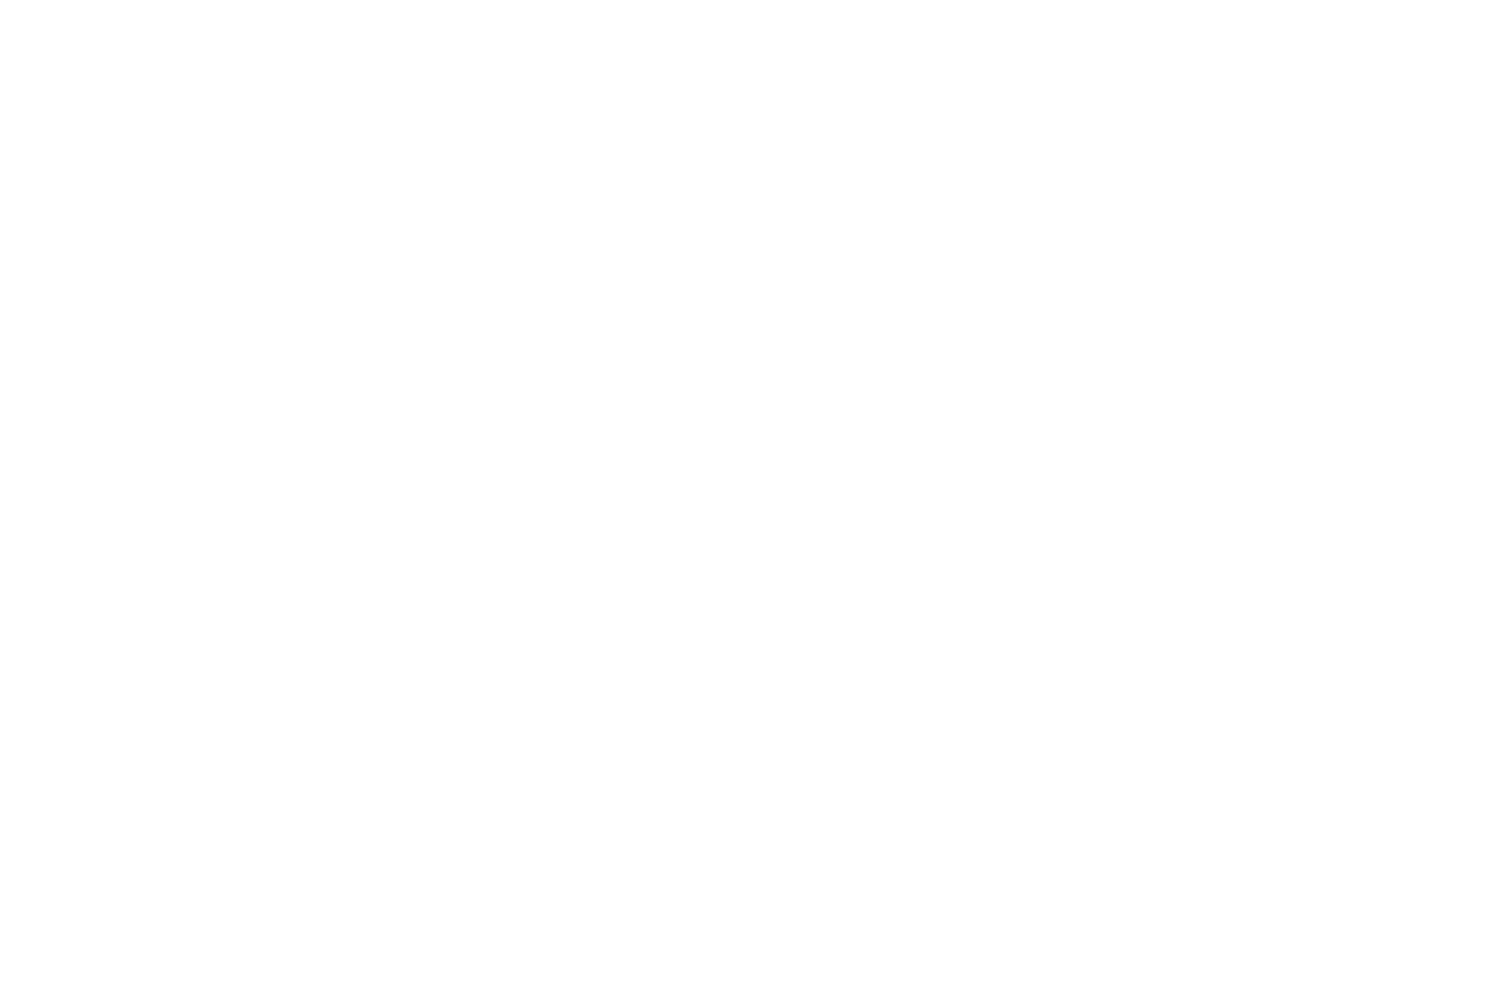 Regina Apostolic Church